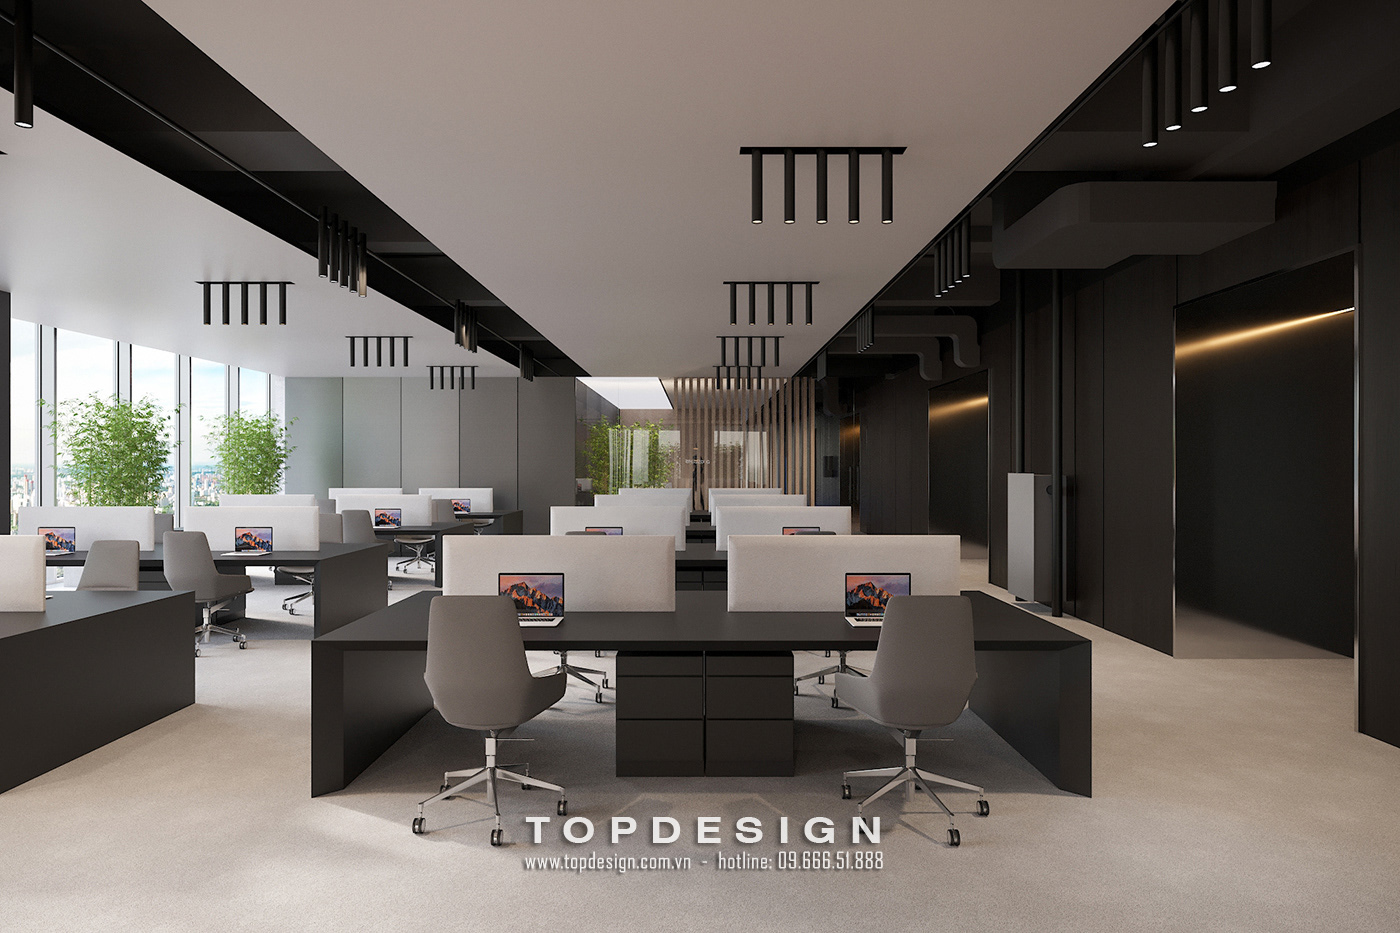 Mẫu thiết kế văn phòng công ty - TOPDESIGN - 10